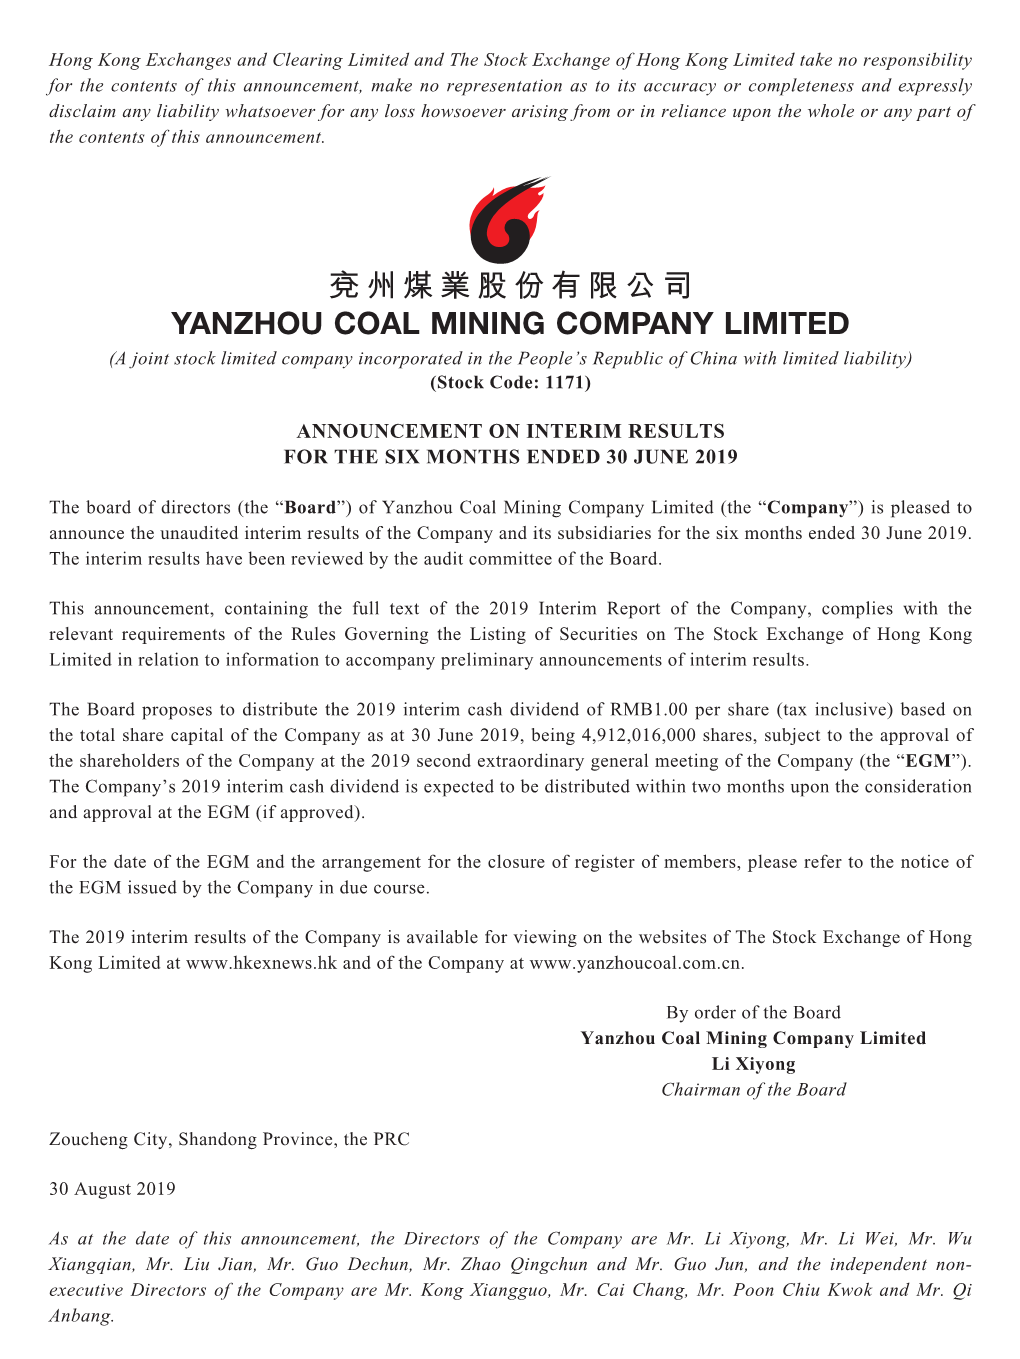 兗州煤業股份有限公司 Yanzhou Coal